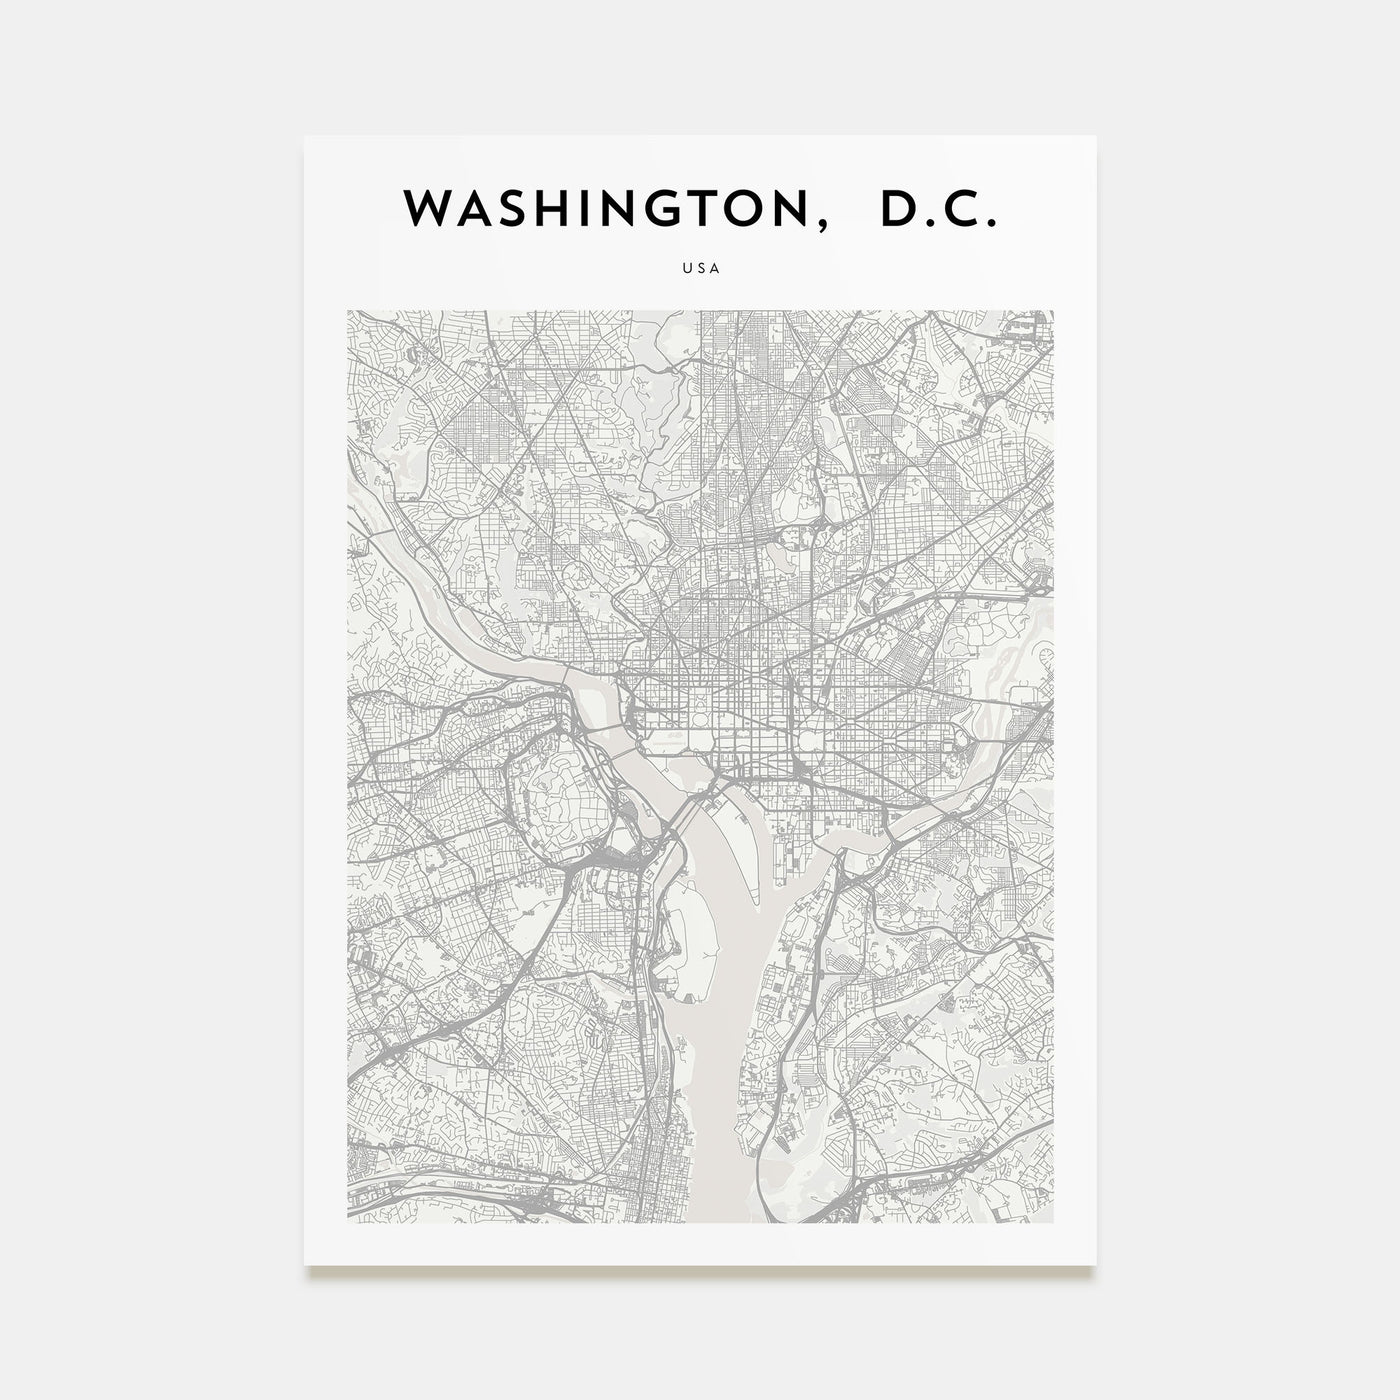 Washington, D.C. Map Portrait Poster